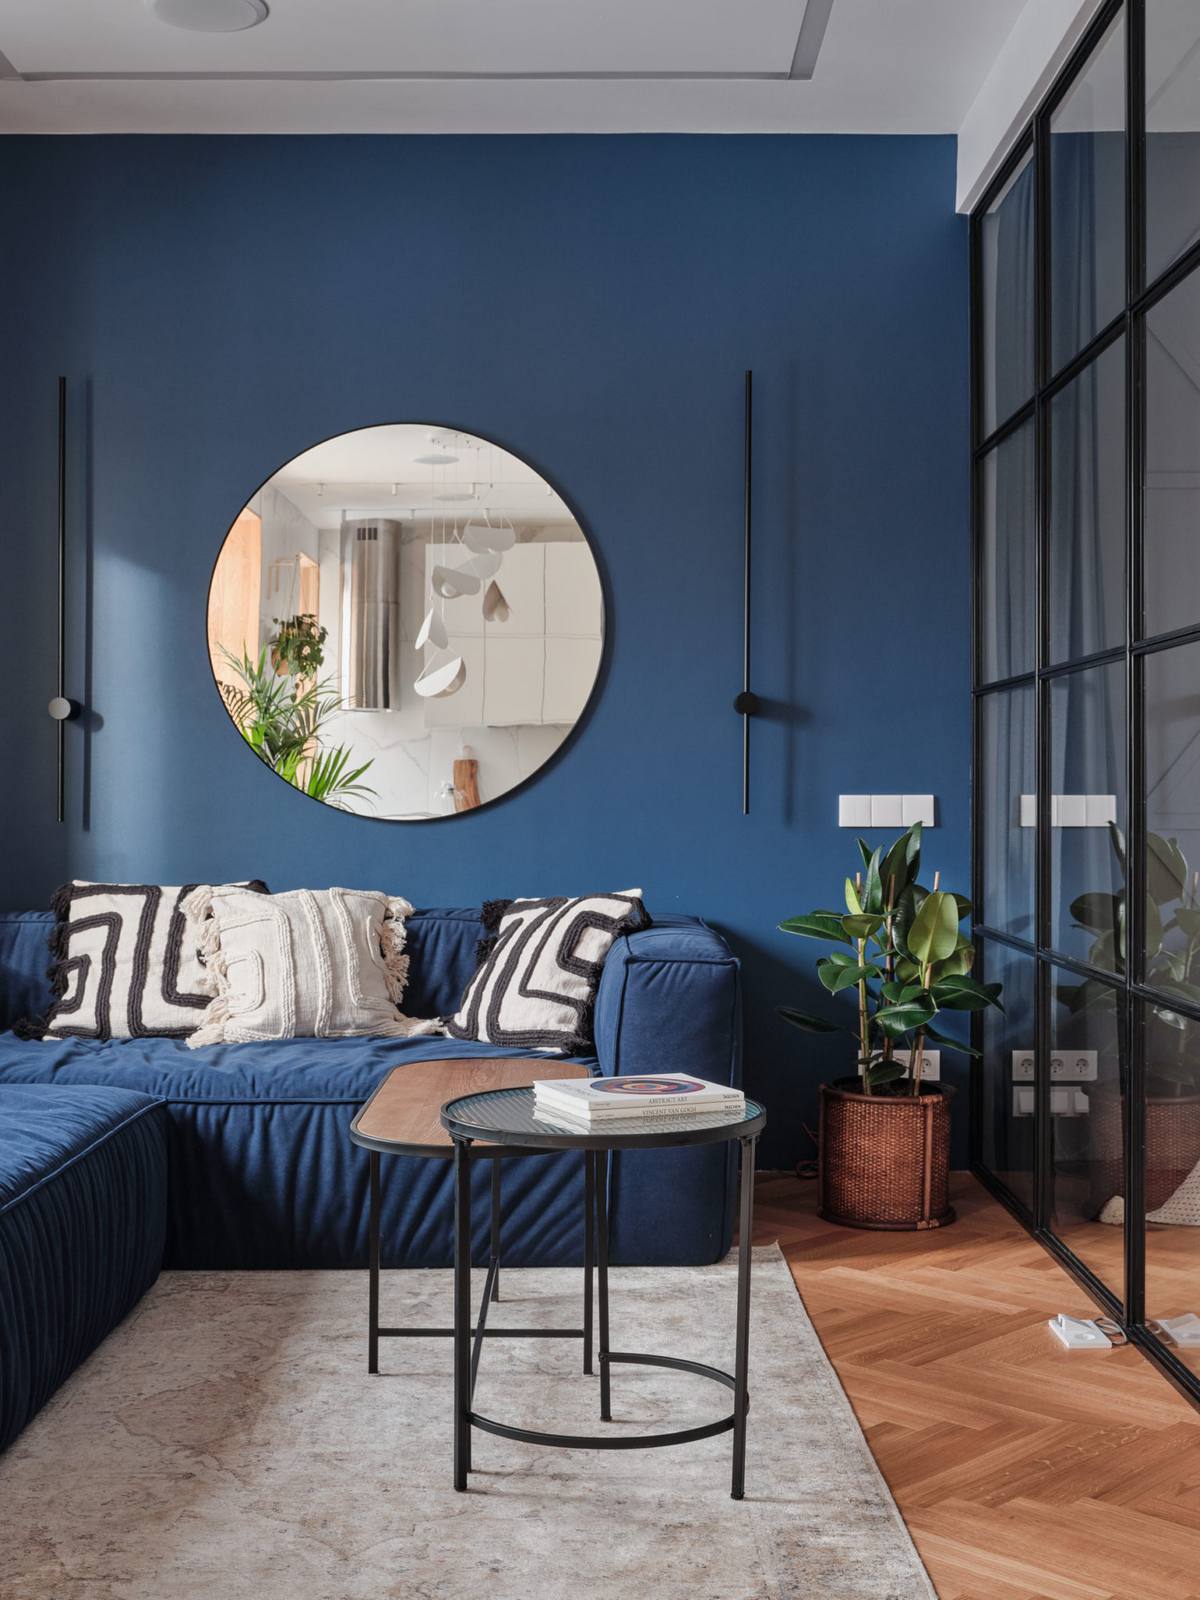 Sofa góc hình chữ L màu xanh lam đồng màu với bức tường, nổi bật những chiếc gối phong cách Boho. Tấm gương tròn tạo điểm nhấn phản chiếu phòng bếp sắc trắng xinh đẹp trên nền tường sau sofa phòng khách.